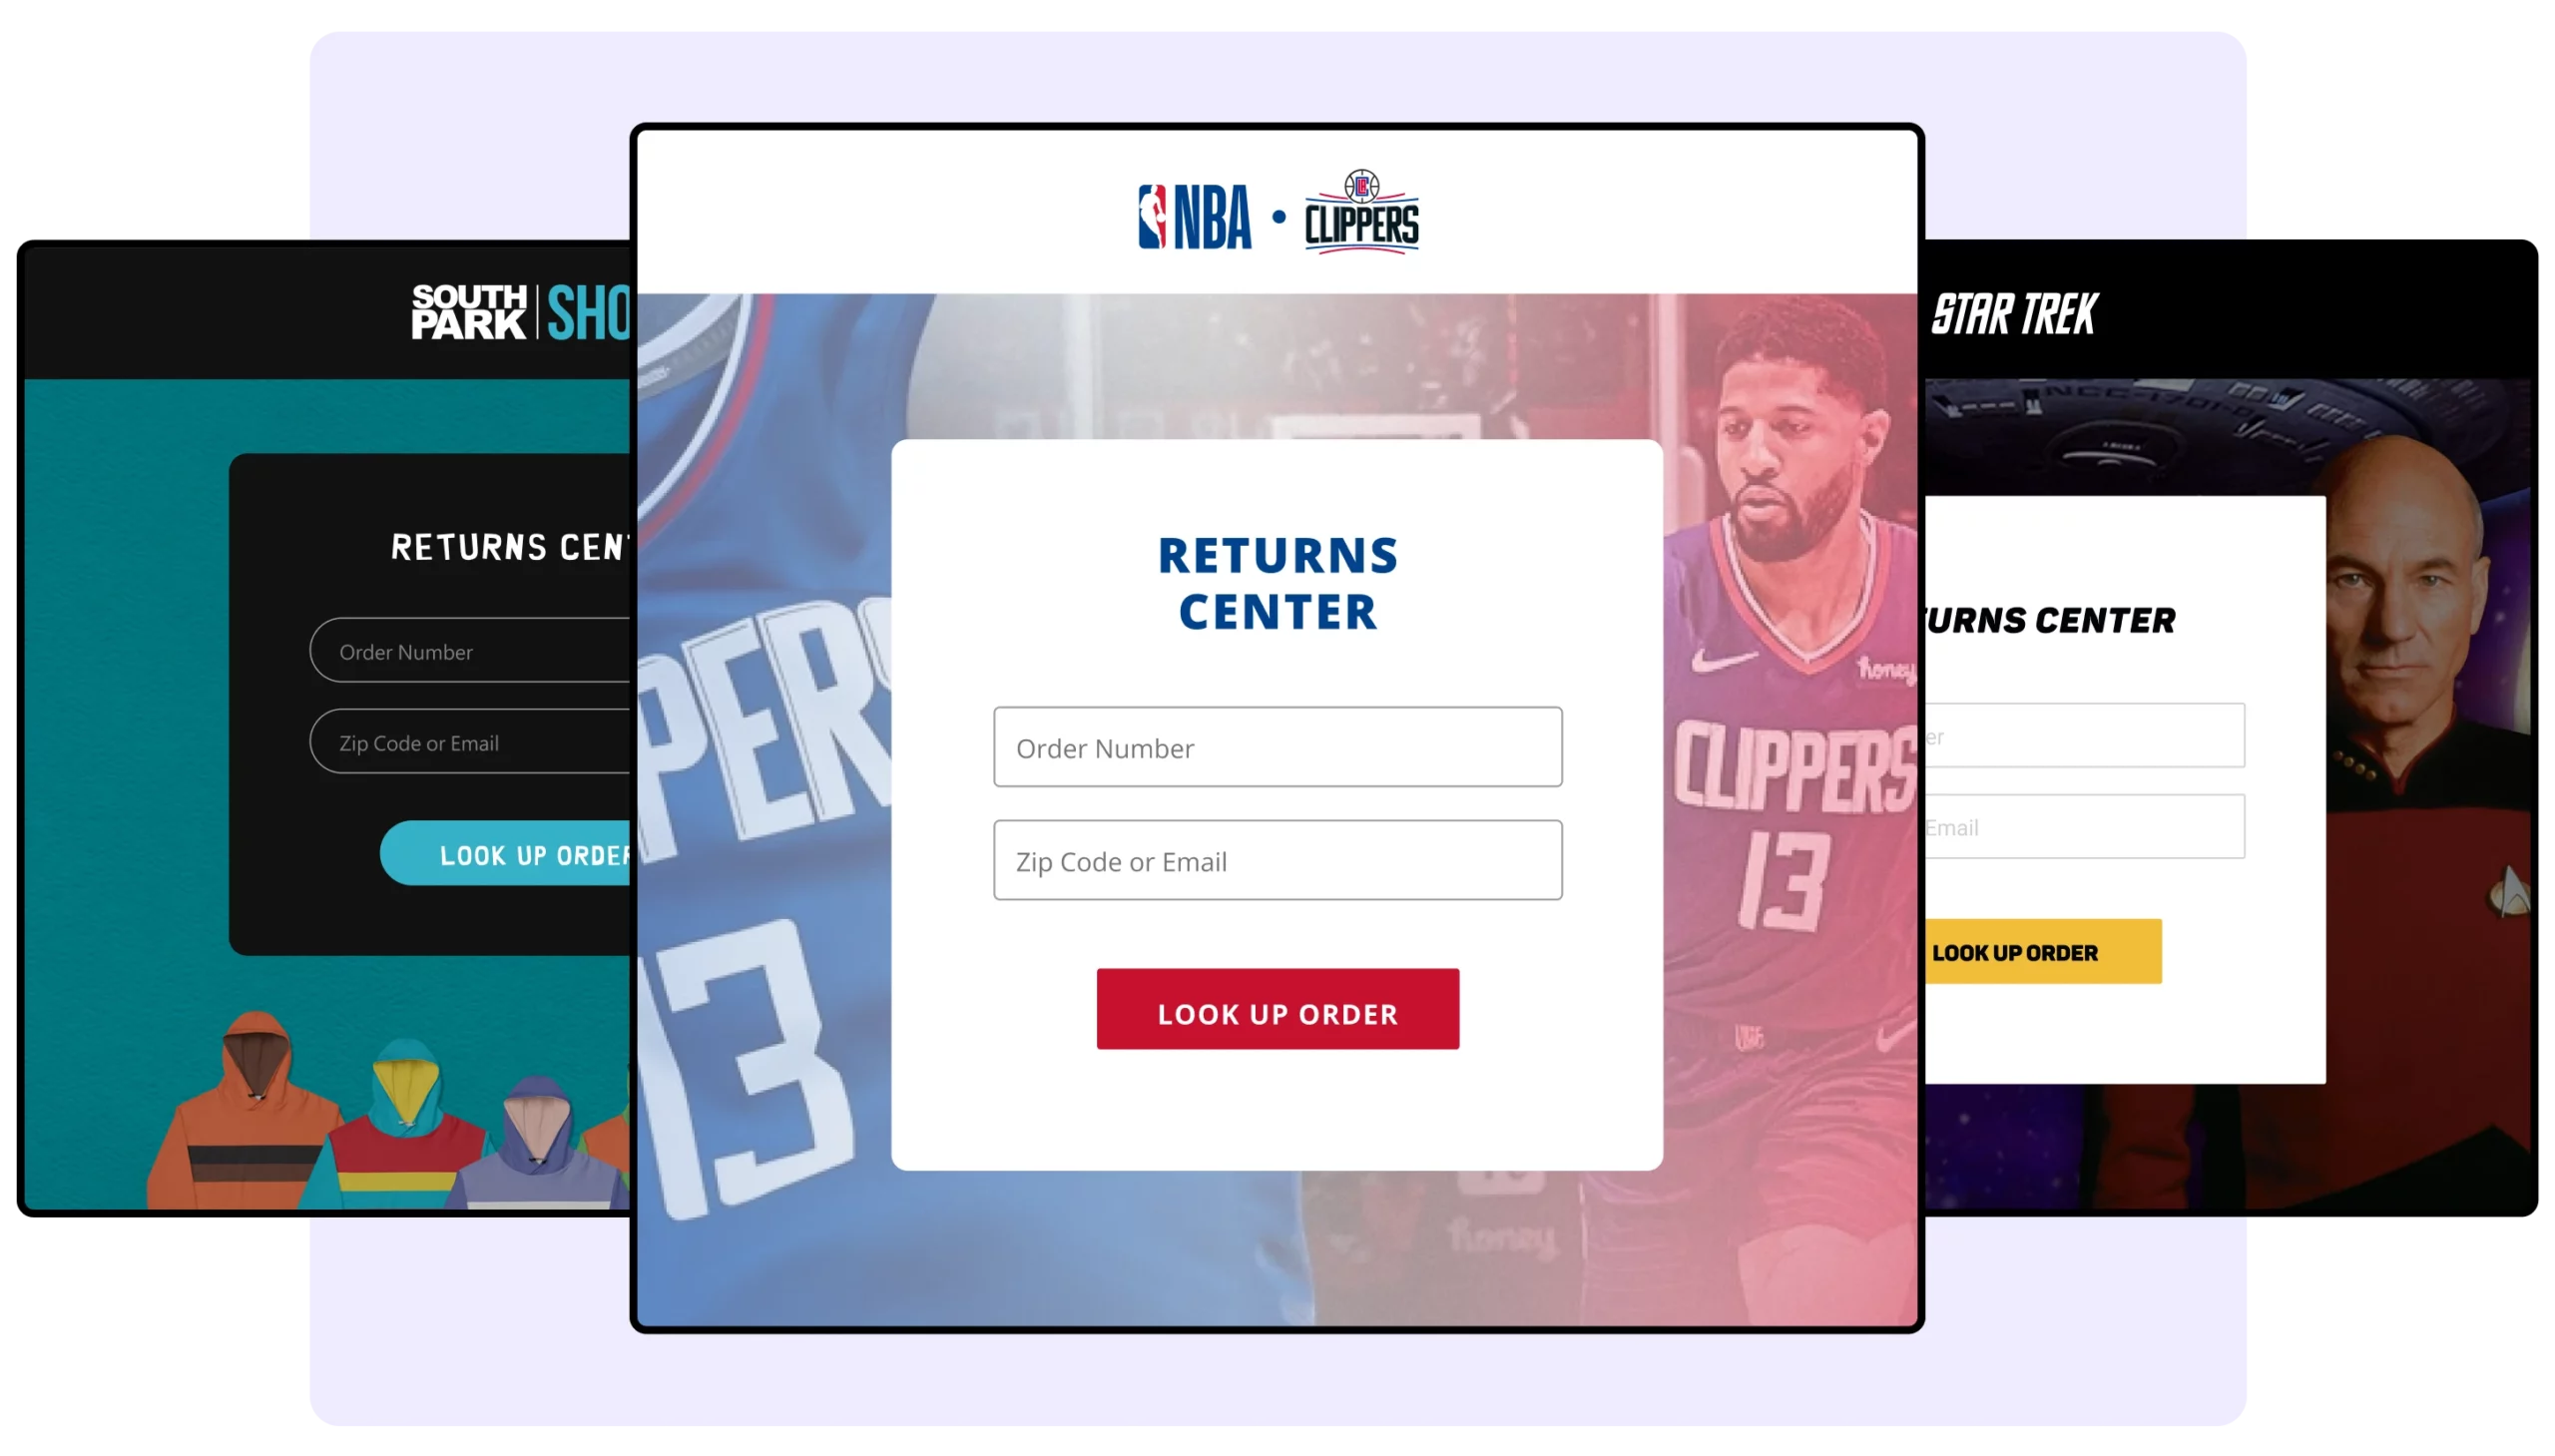 WeSupply branded returns center - NBA SOUTH PARK STAR TREK